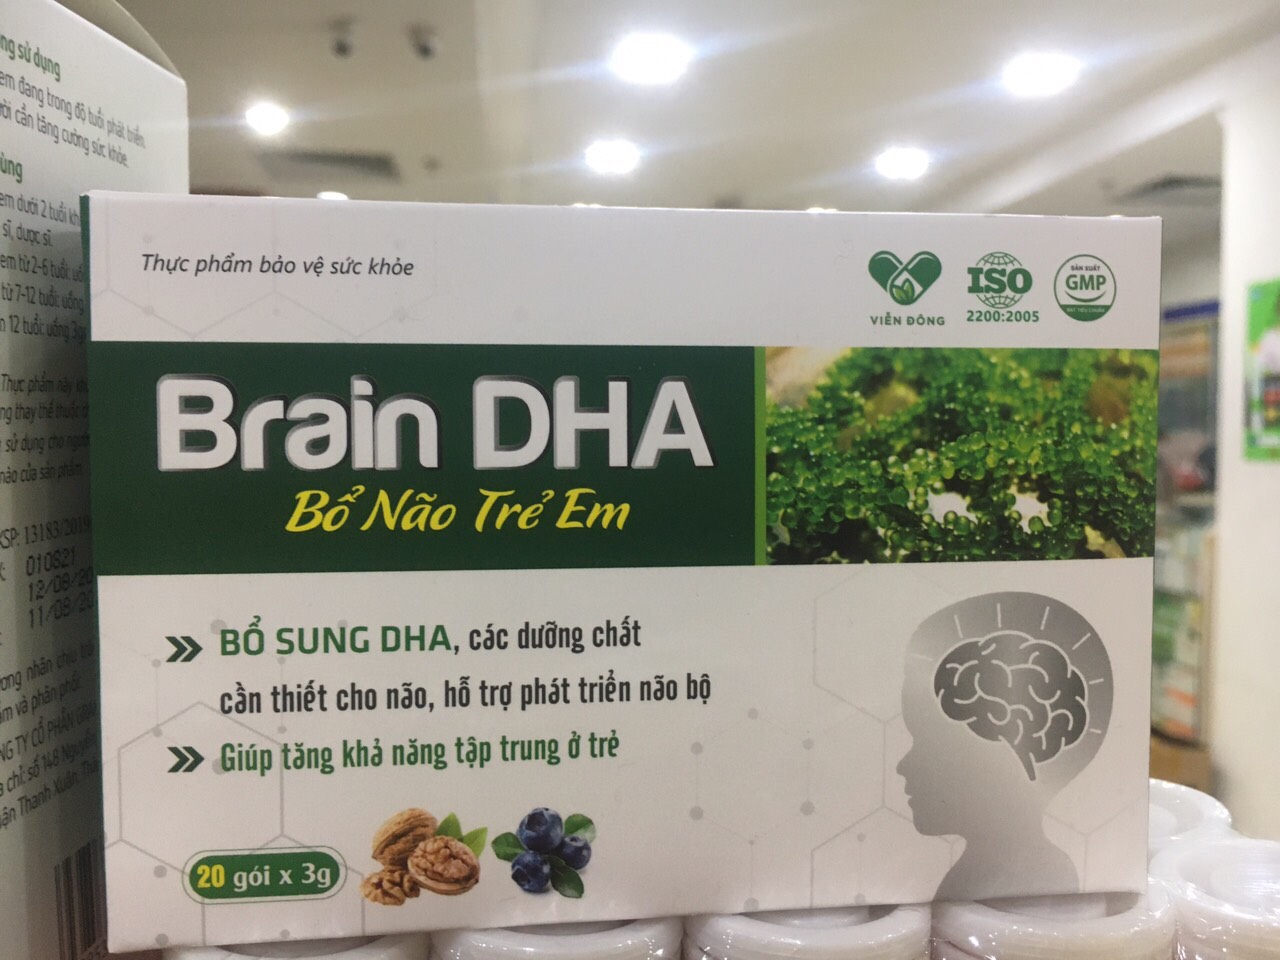 Brain DHA